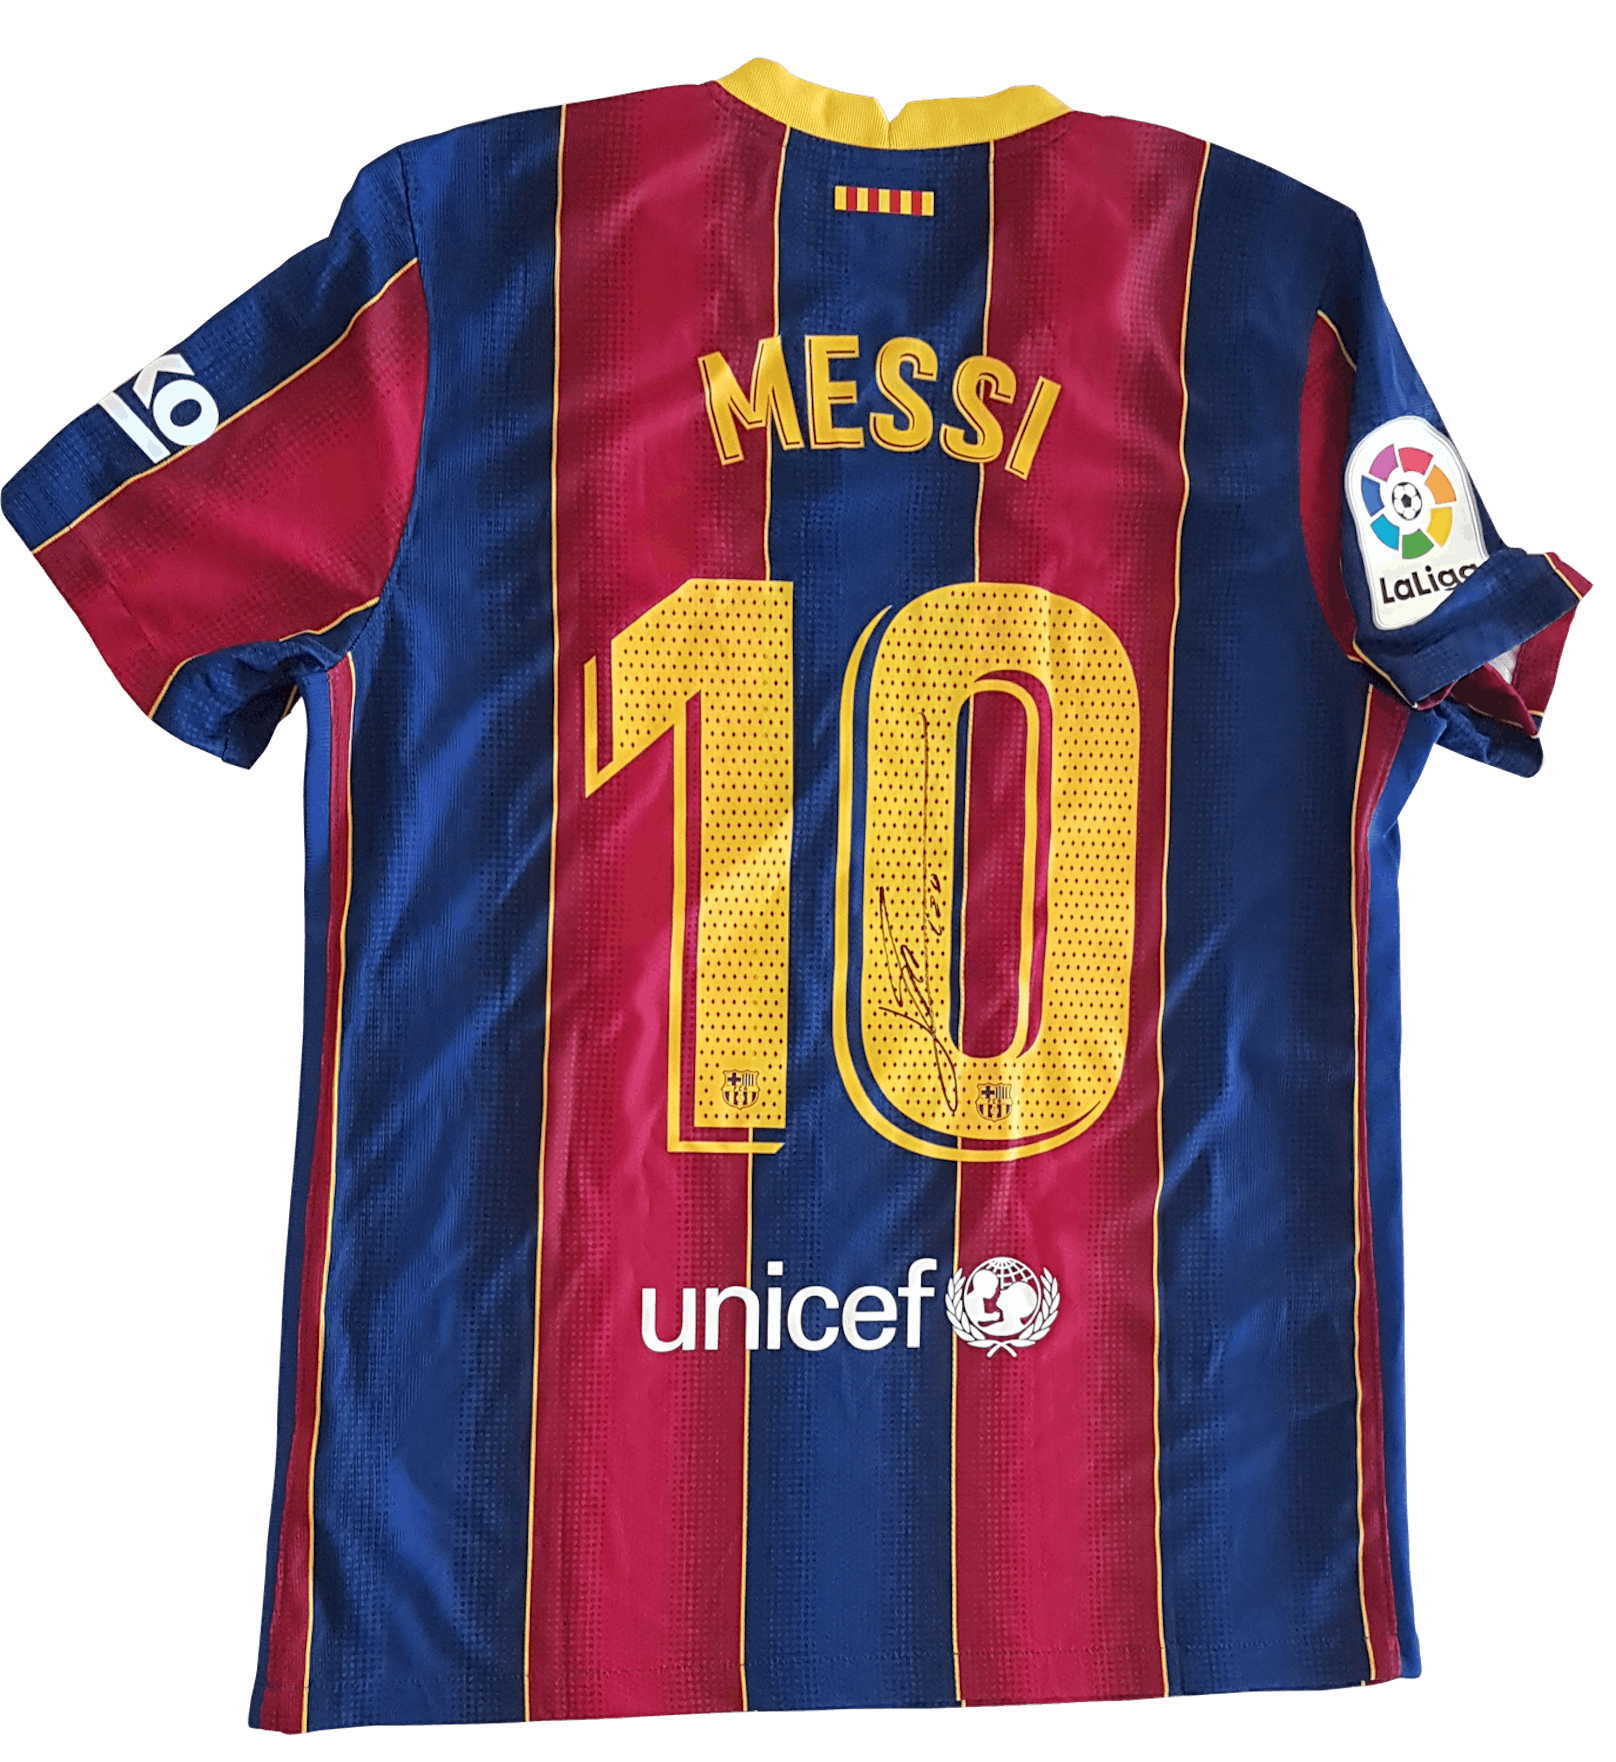 Zu gewinnen gibt es ein signiertes Trikot vom Fußballgiganten Lionel Messi höchstpersönlich!